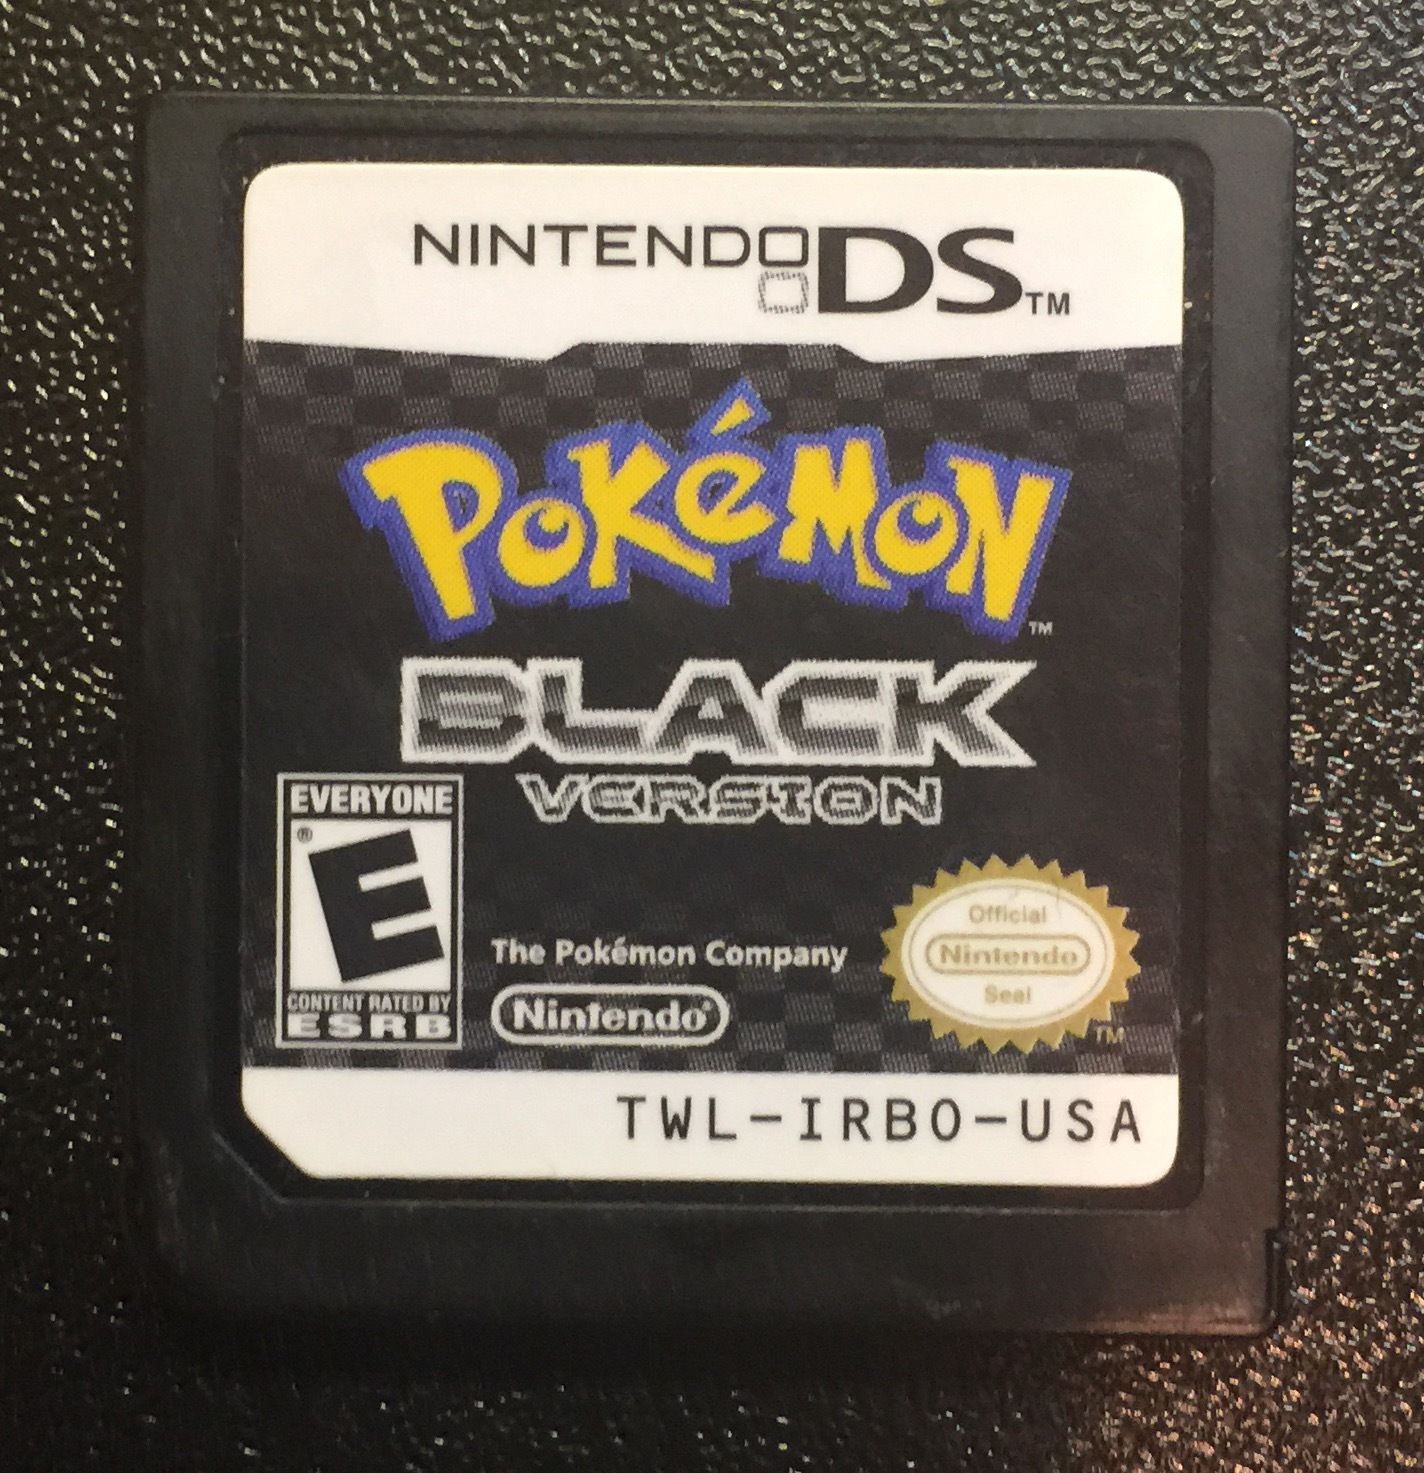 Nintendo black. Nintendo DS Pokemon Black 2 картридж. Pokemon Black Nintendo DS. Pokemon Black картридж.